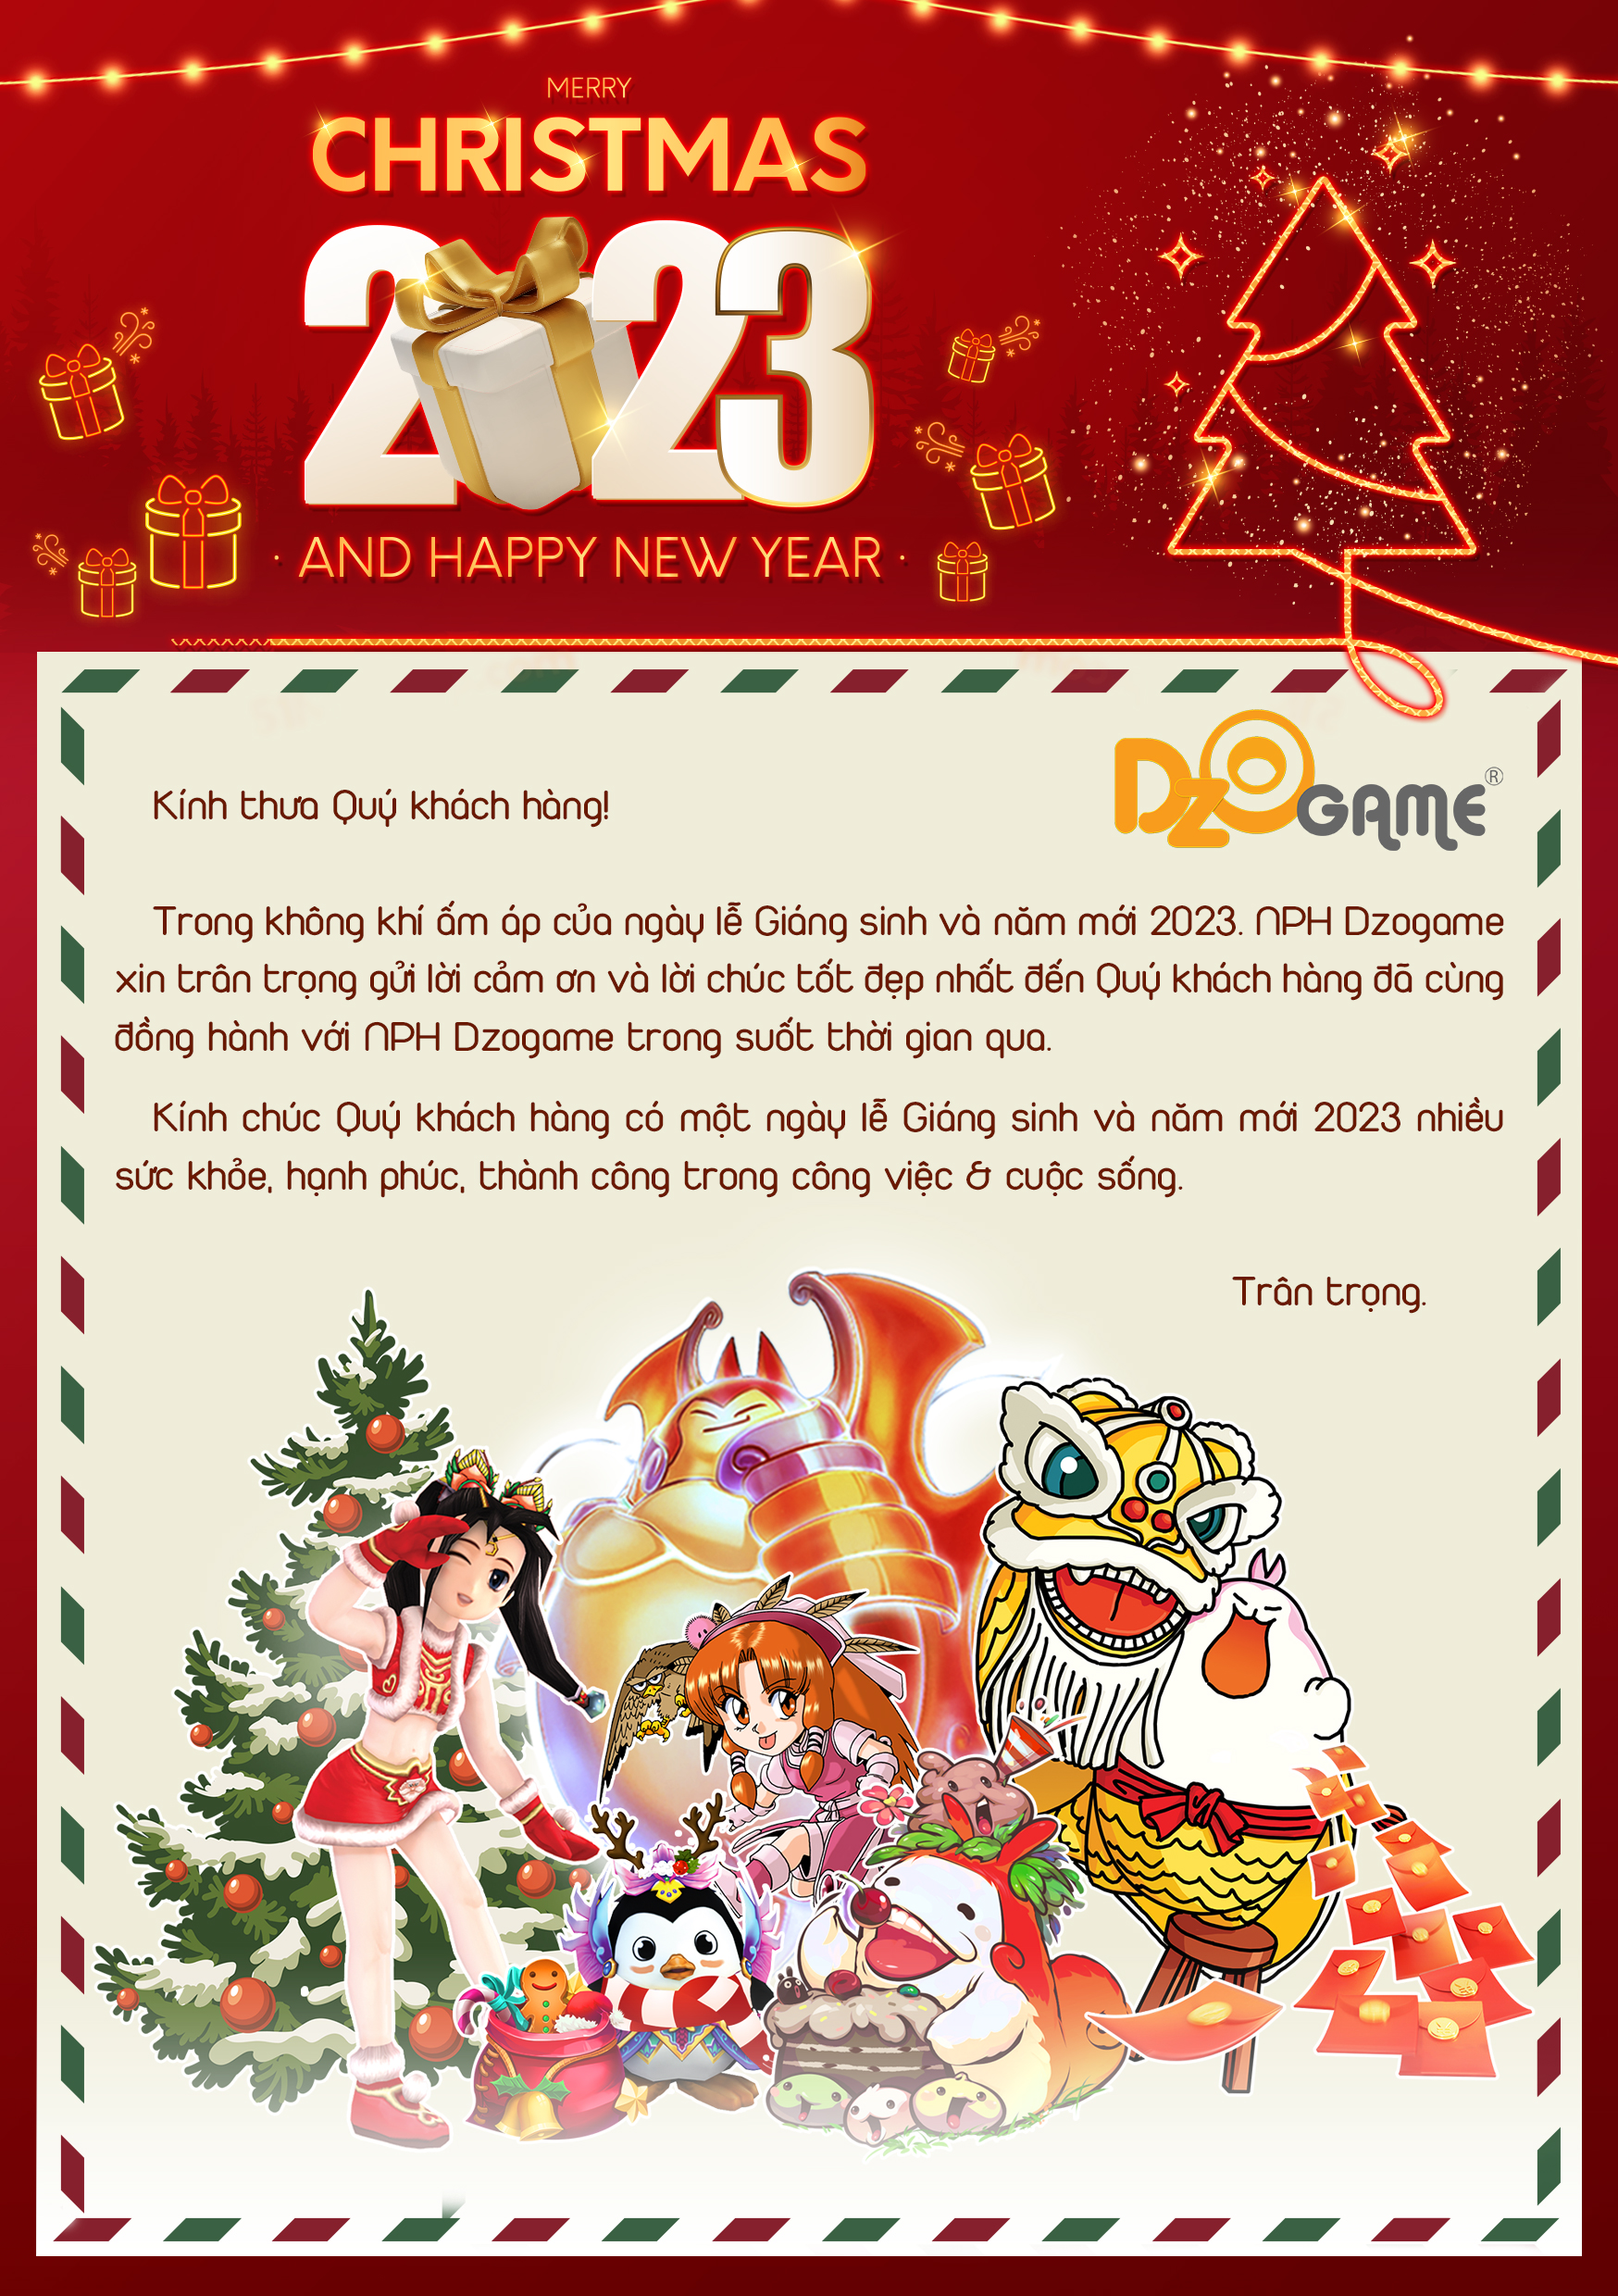 Yulgang Hiệp Khách Dzogame VN - [Merry Christmas] (2022) & [Happy New Year] (2023) - 23122022